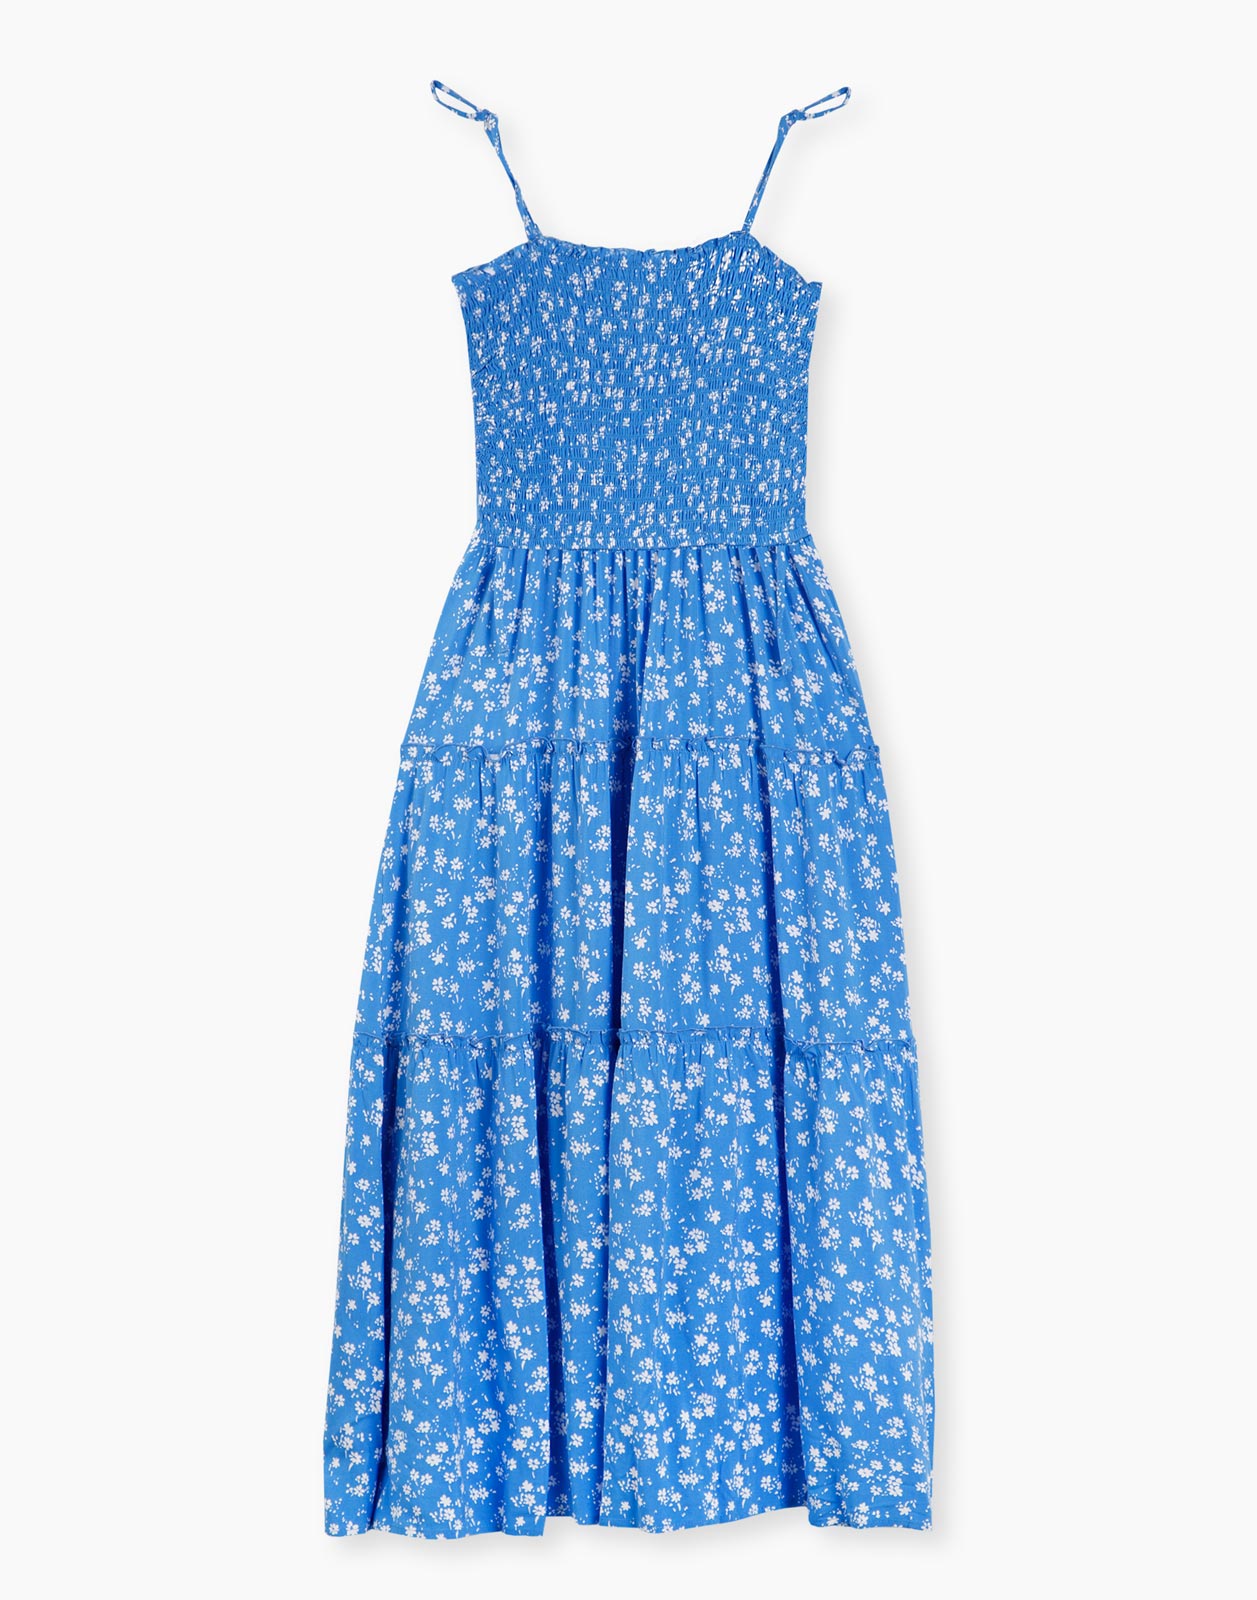 Платье женское Gloria Jeans GDR026902 синее XL